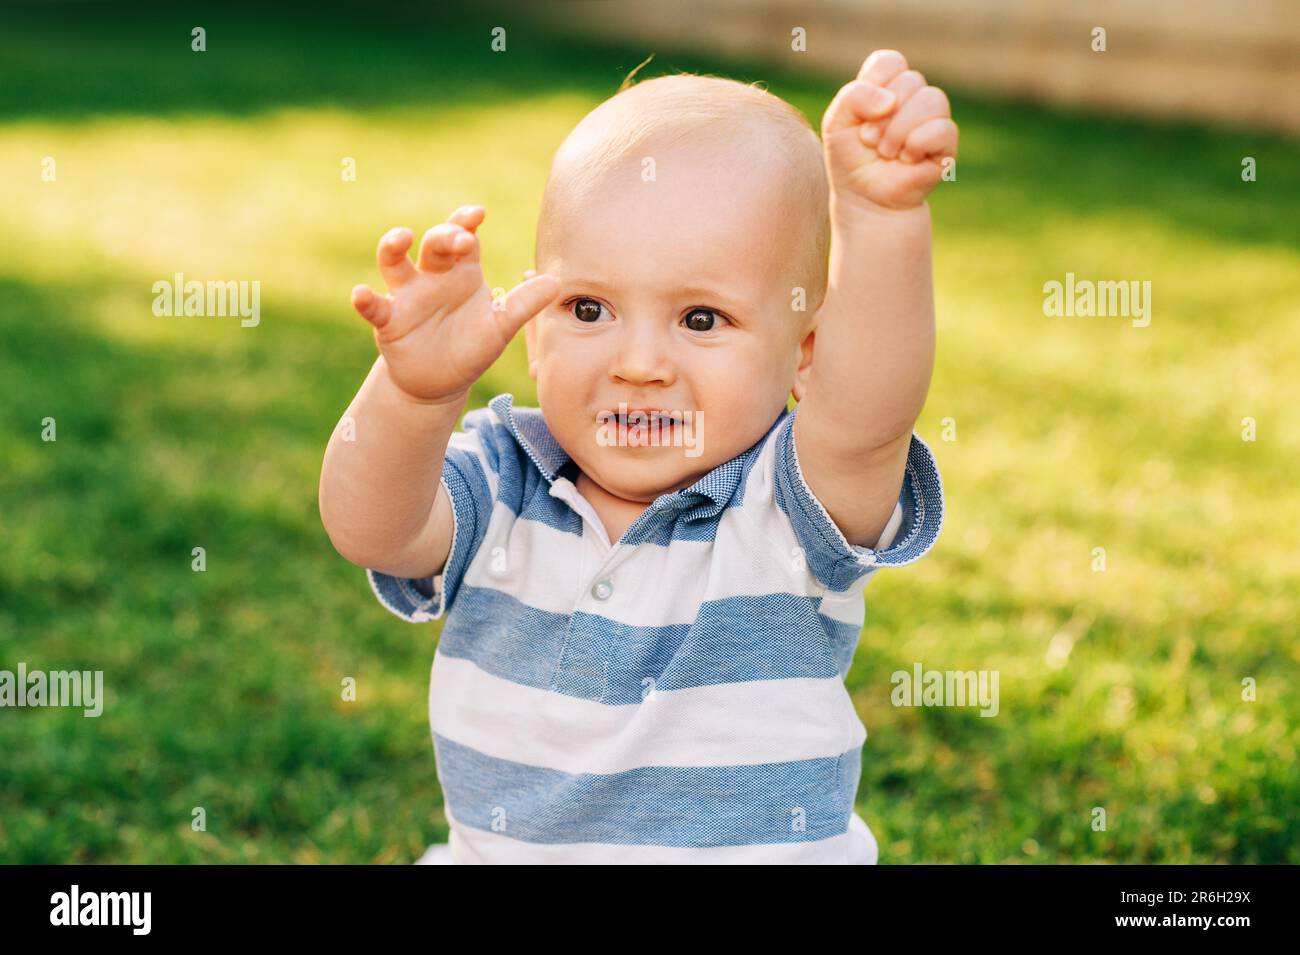 Retrato al aire libre del bebé adorable que juega en el parque del verano, tirando de las manos hacia arriba Foto de stock